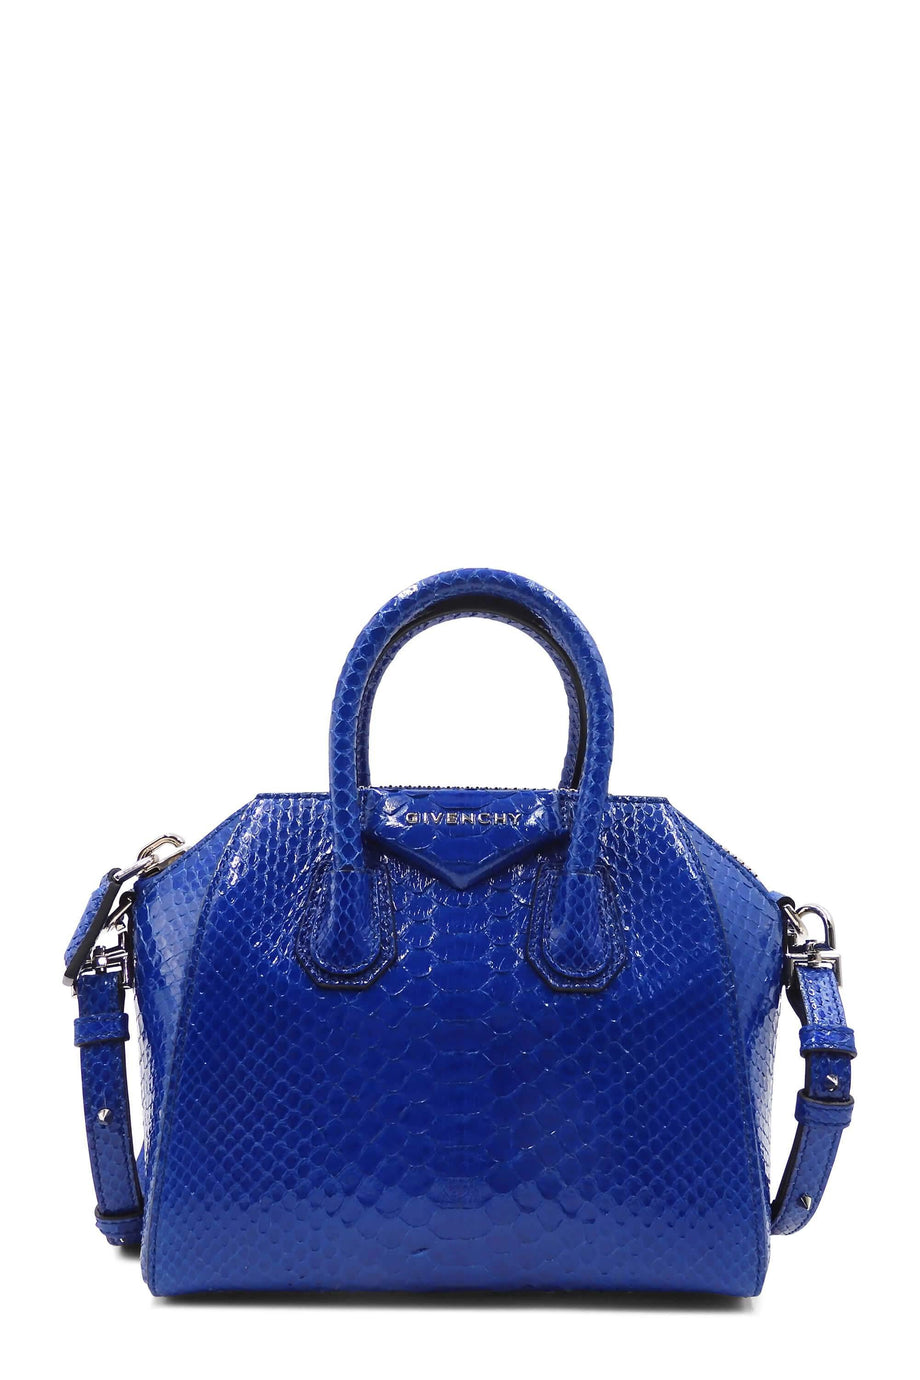 Givenchy Blue Python Handle Bag